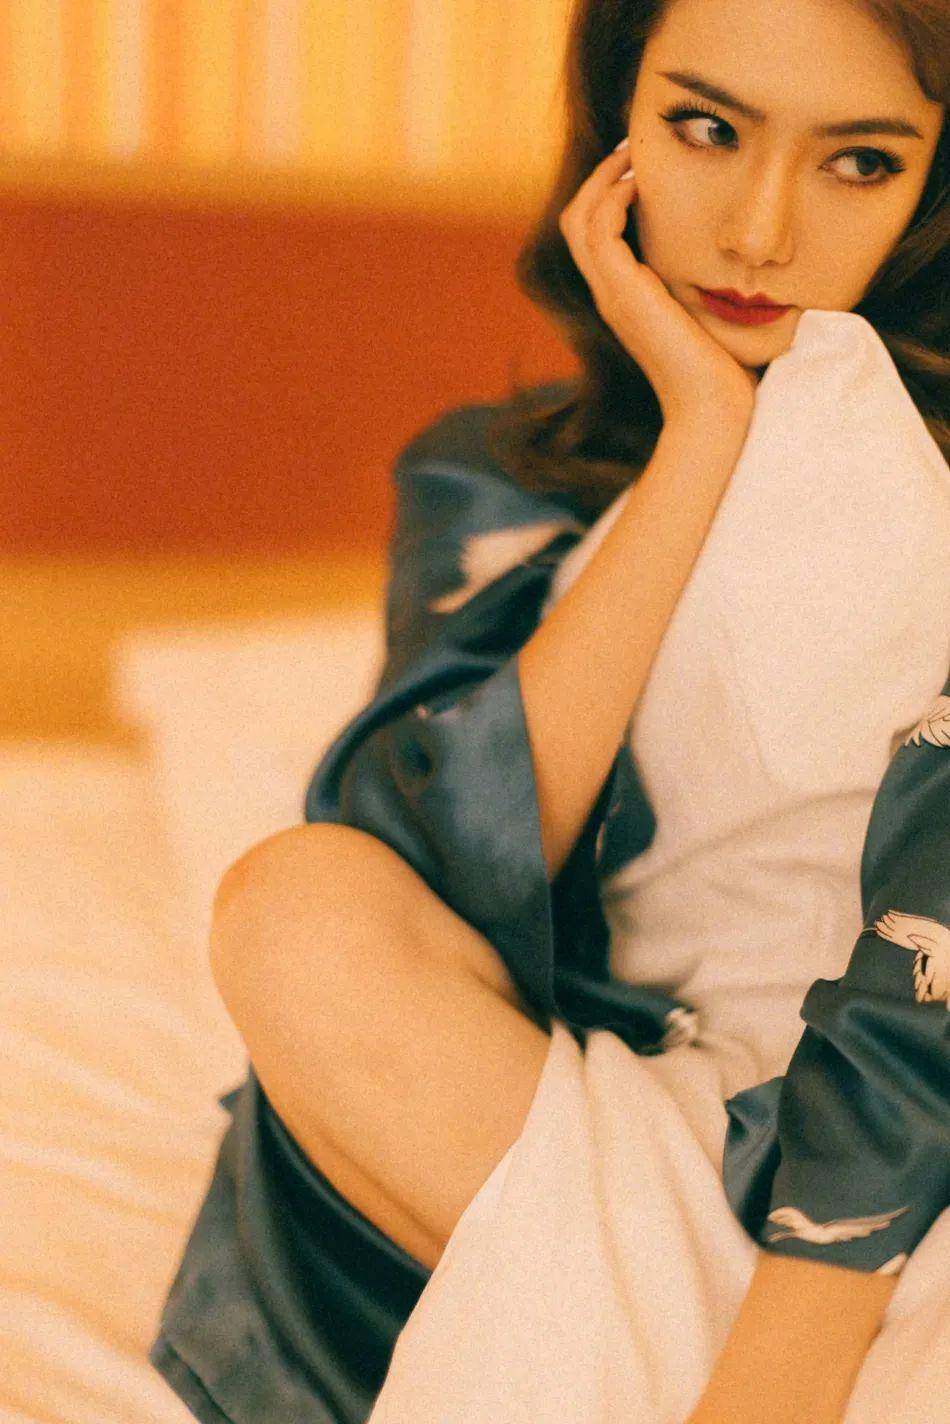 戚薇,1984年10月26日出生在四川成都,她有四分之一韩国血统.